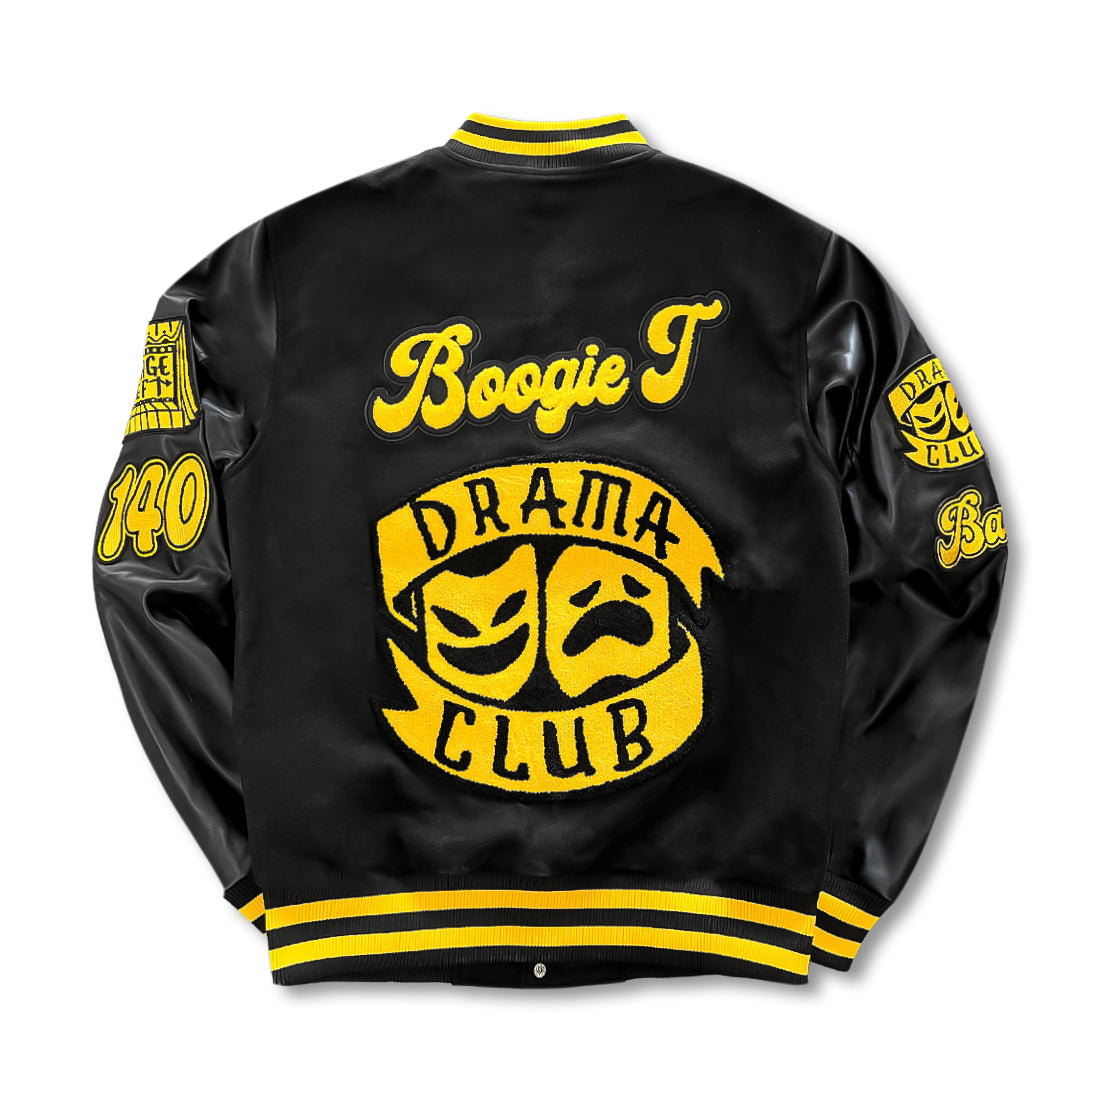 Boogie T - Letterman Jacket